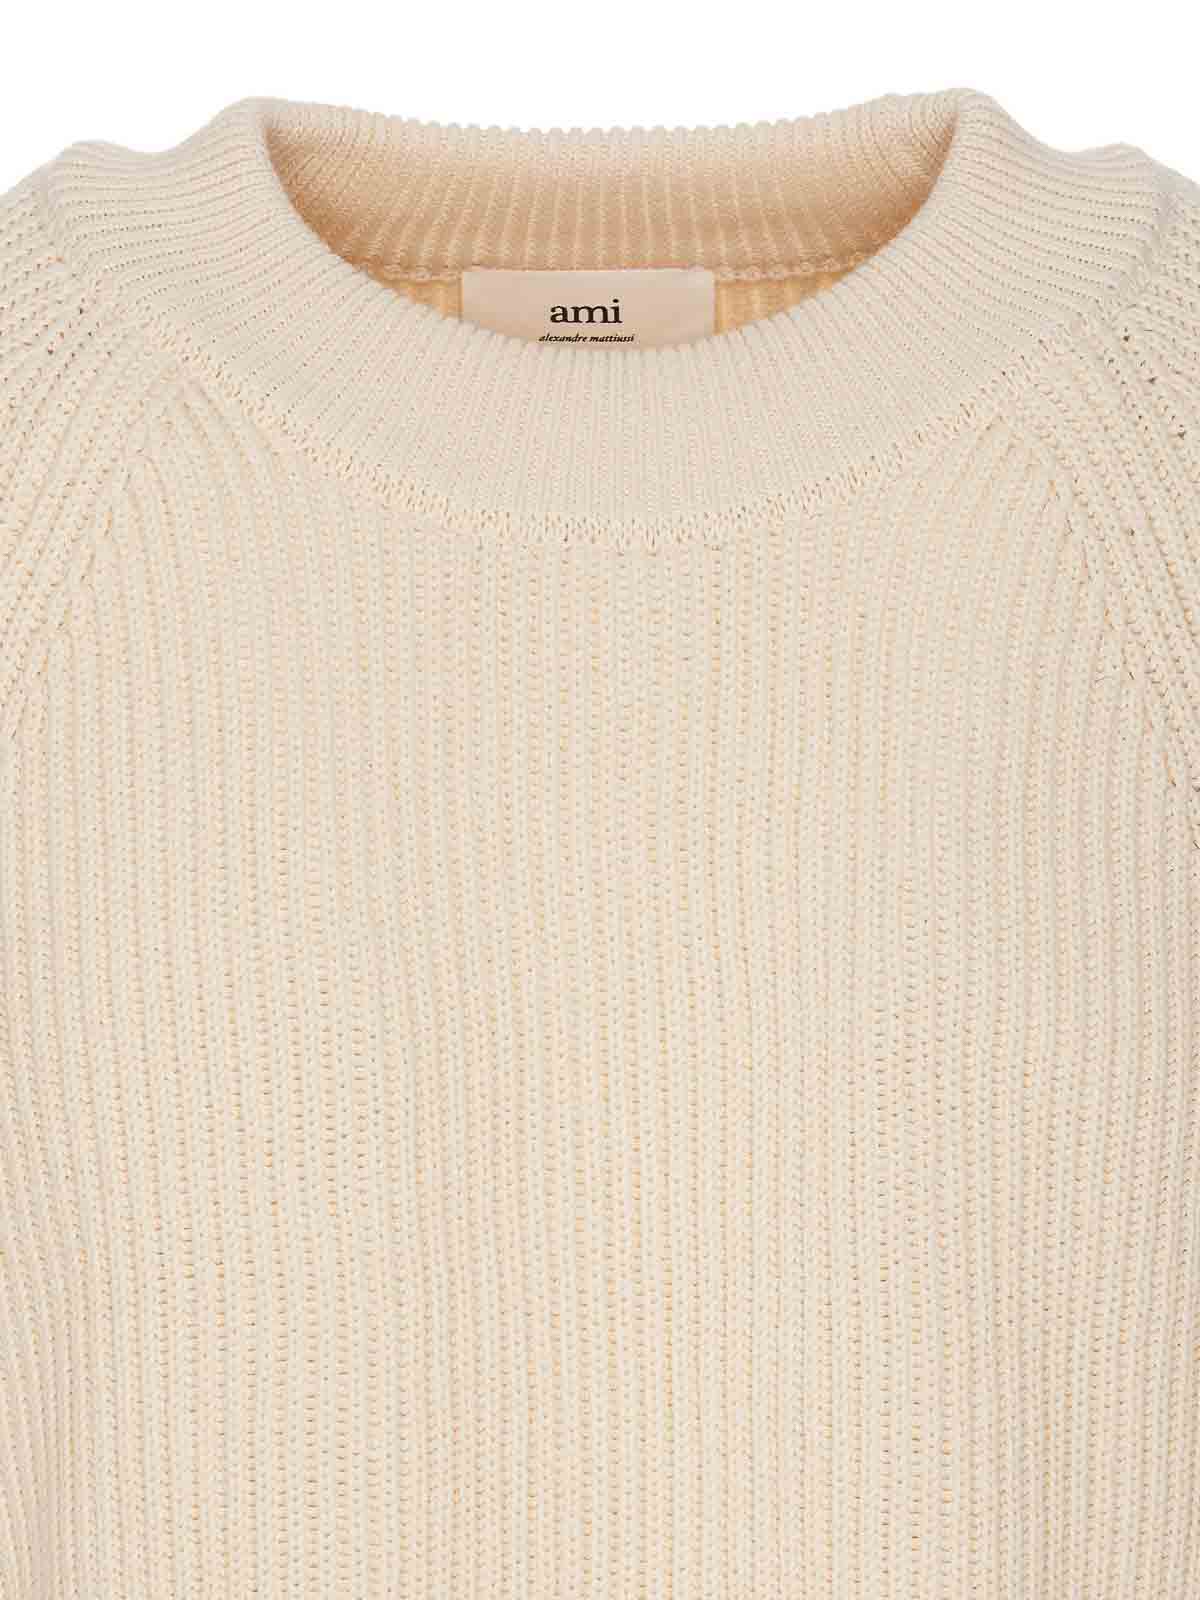 Shop Ami Alexandre Mattiussi Ami Label Sweater In White